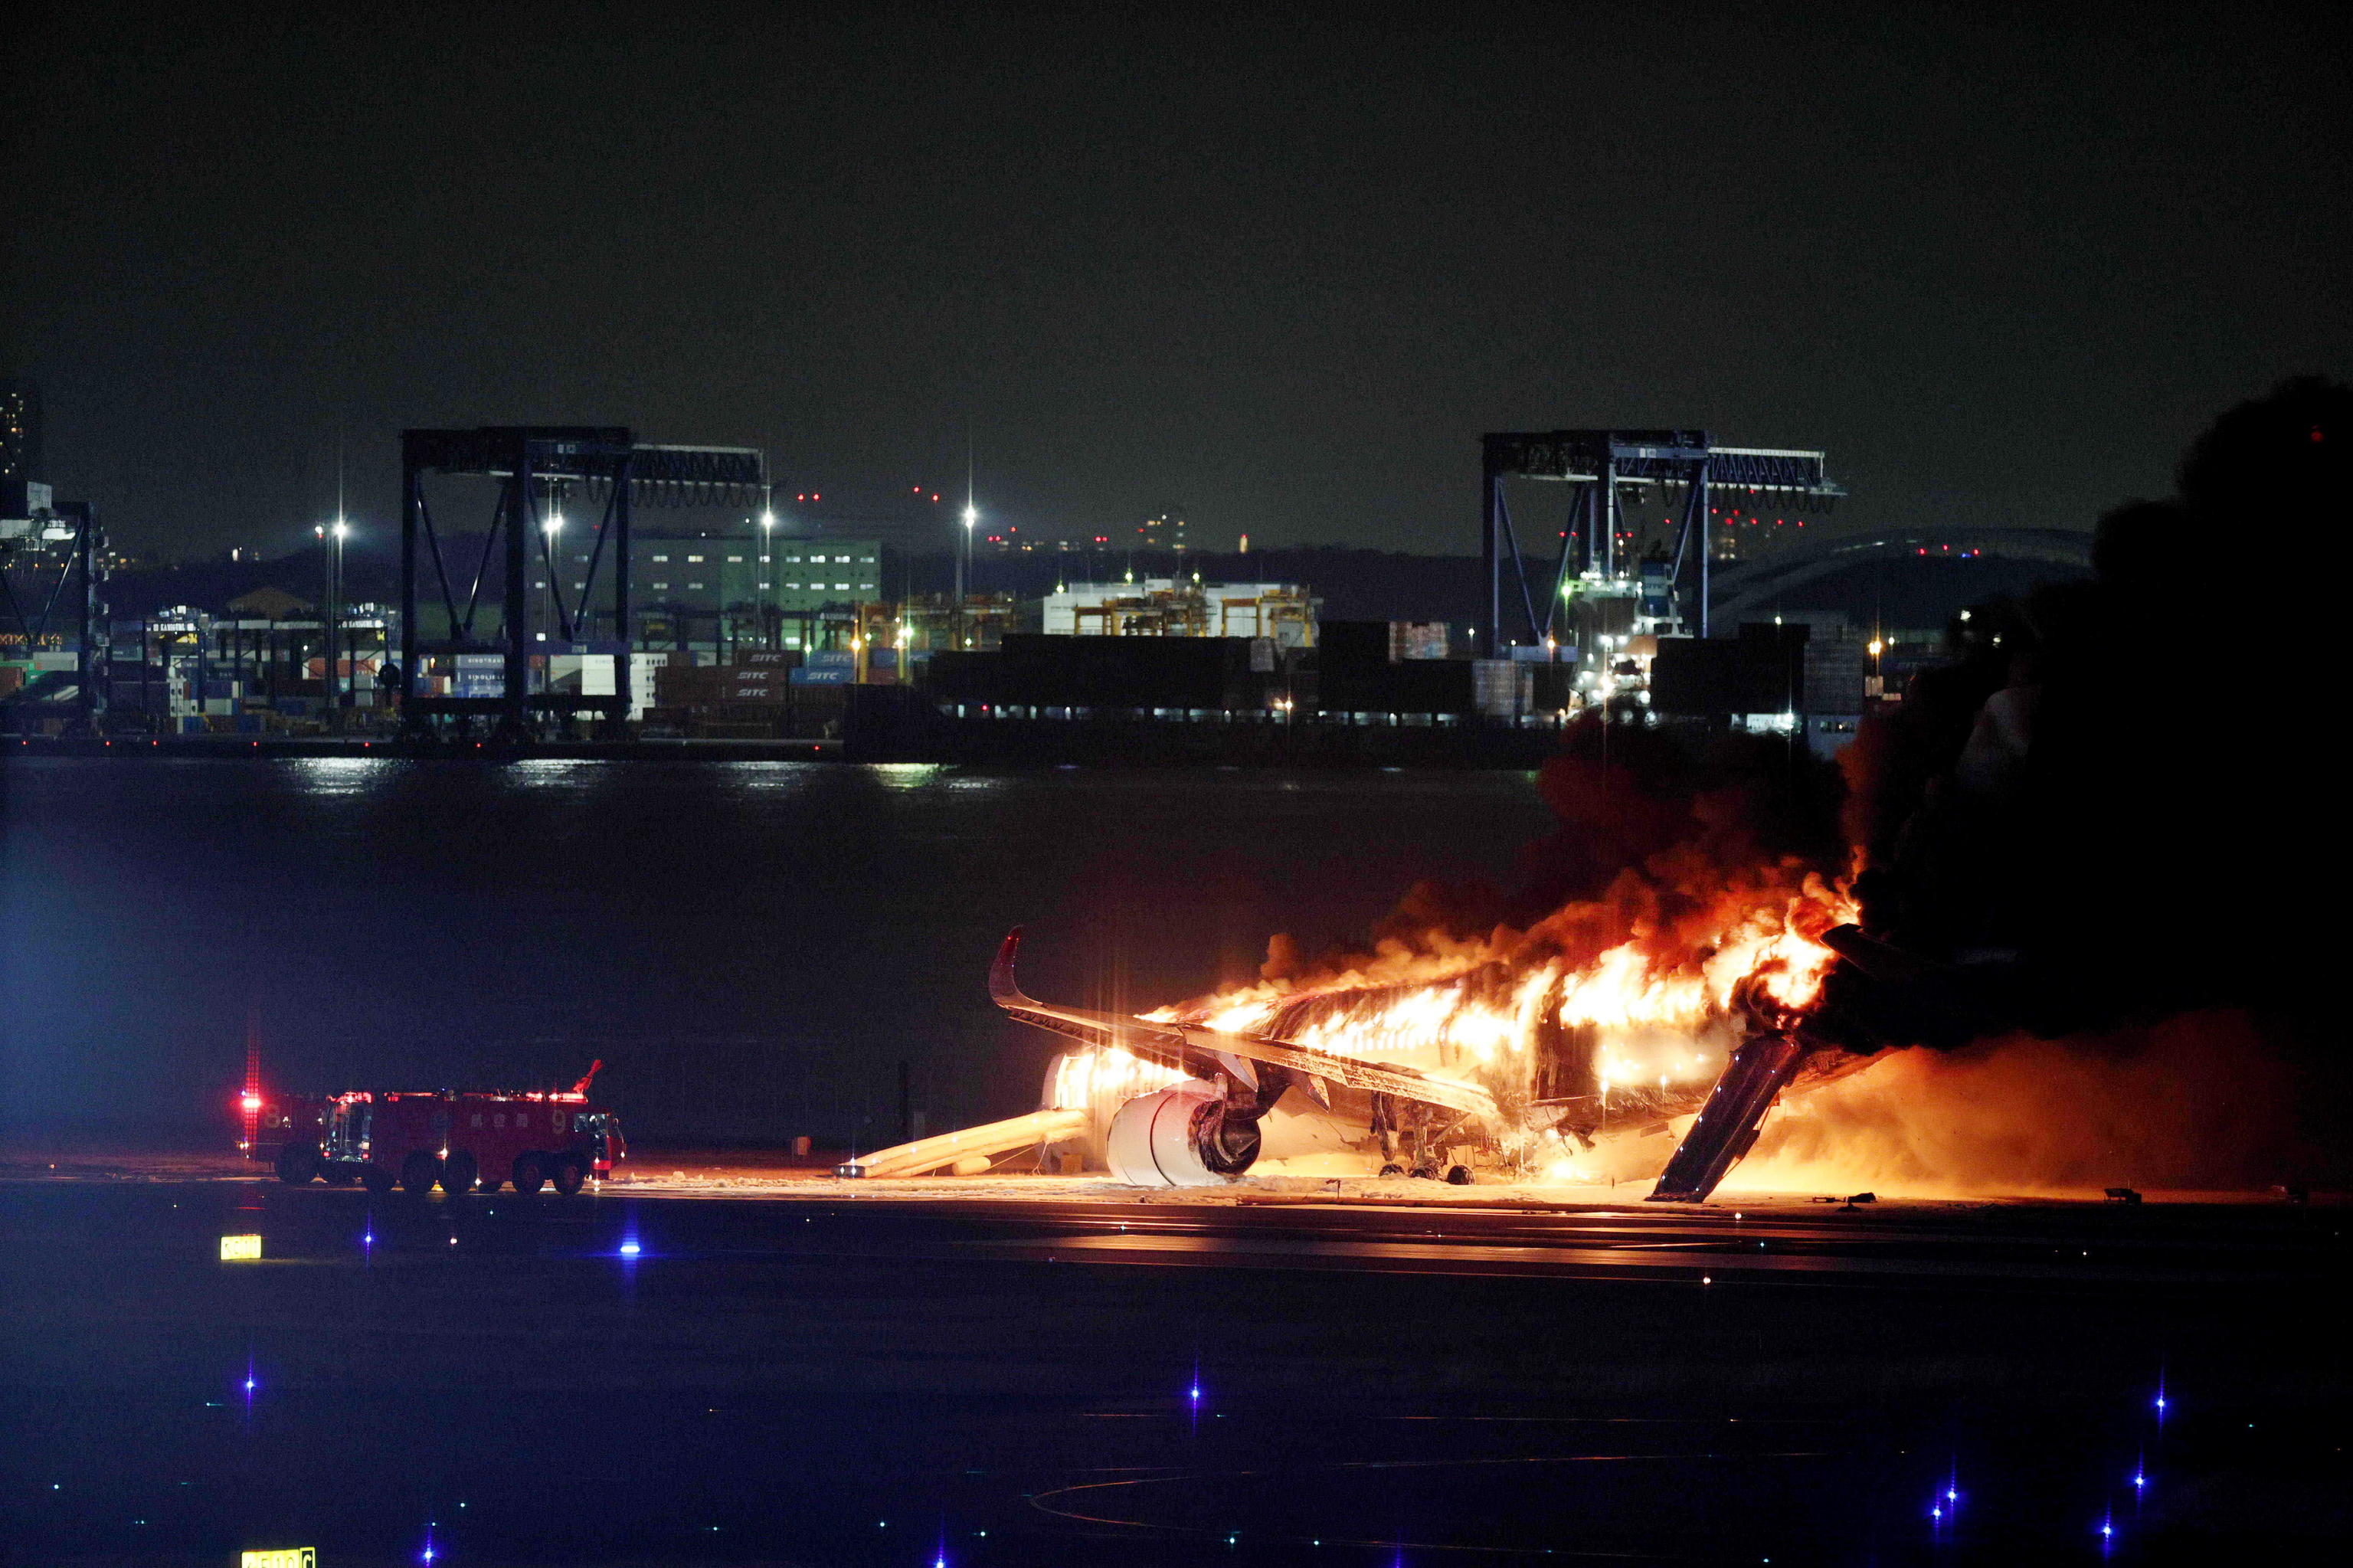 El avin de pasajeros siniestrado ardiendo en el aeropuerto.